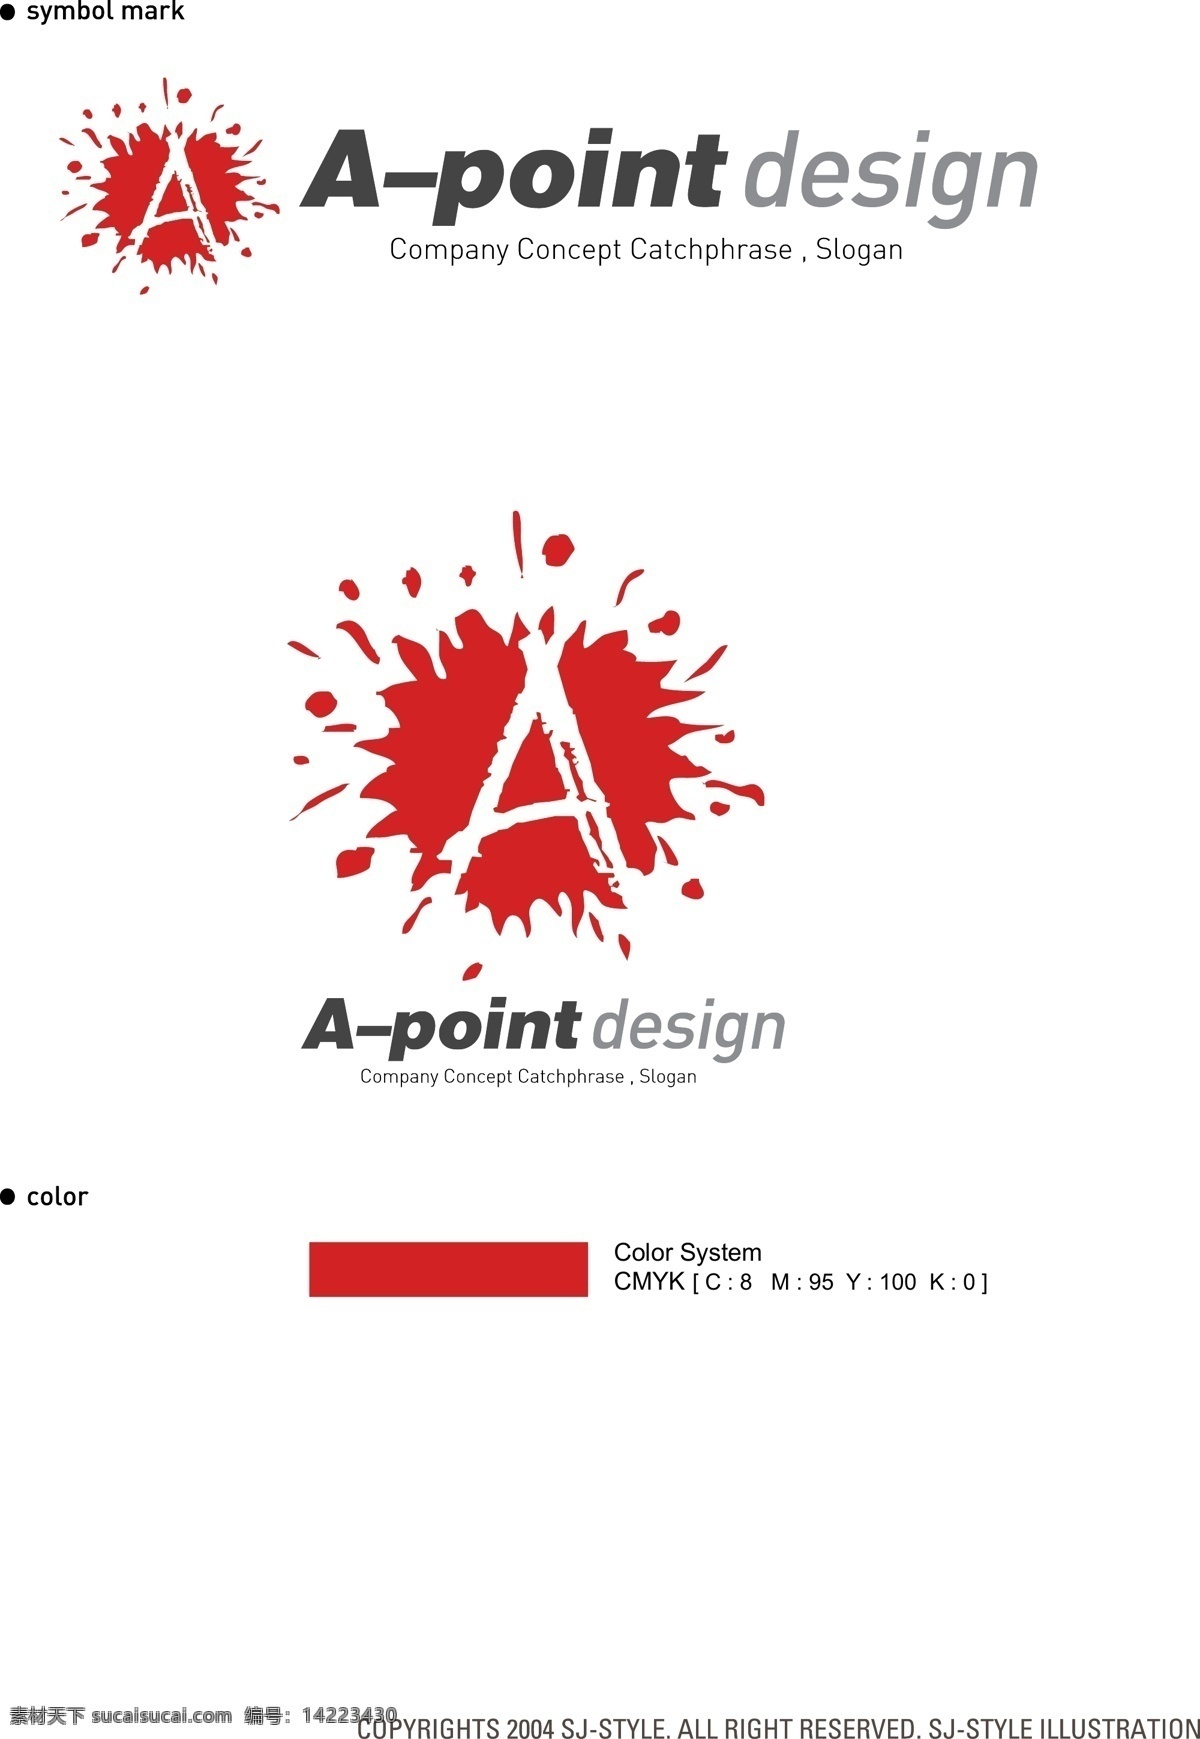 字母 logo 标识设计 vi 识别 系统 logo设计 logo制作 vi设计 标识 调色 红色 企业标识 图标 企业图标 颜色搭配 设计标识 图标设计 矢量图